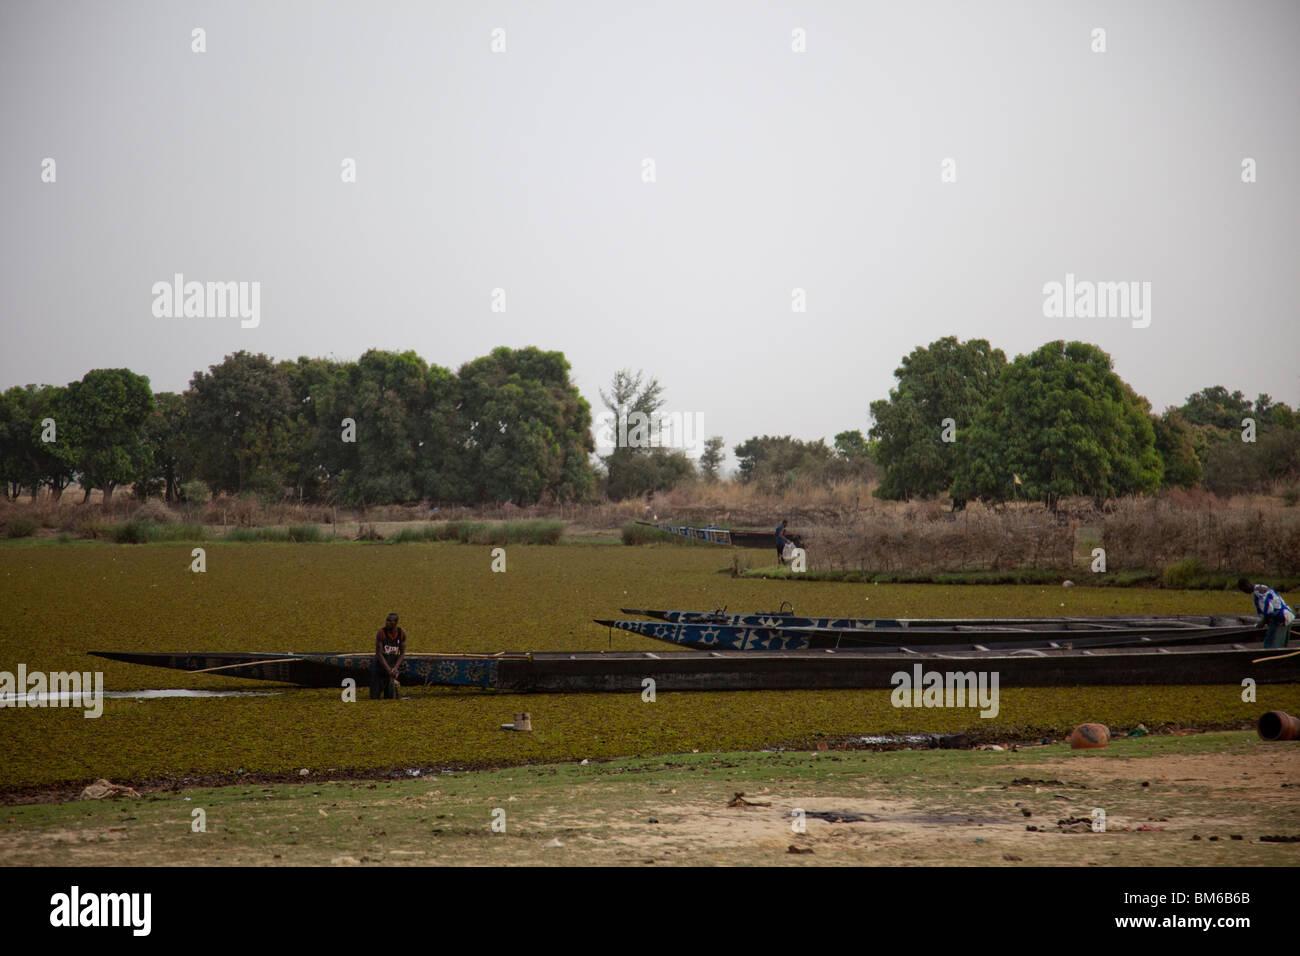 Kanus säumen den Fluss Niger neben der Töpferei Kalabougou, in der Nähe von Segou, Mali. Stockfoto